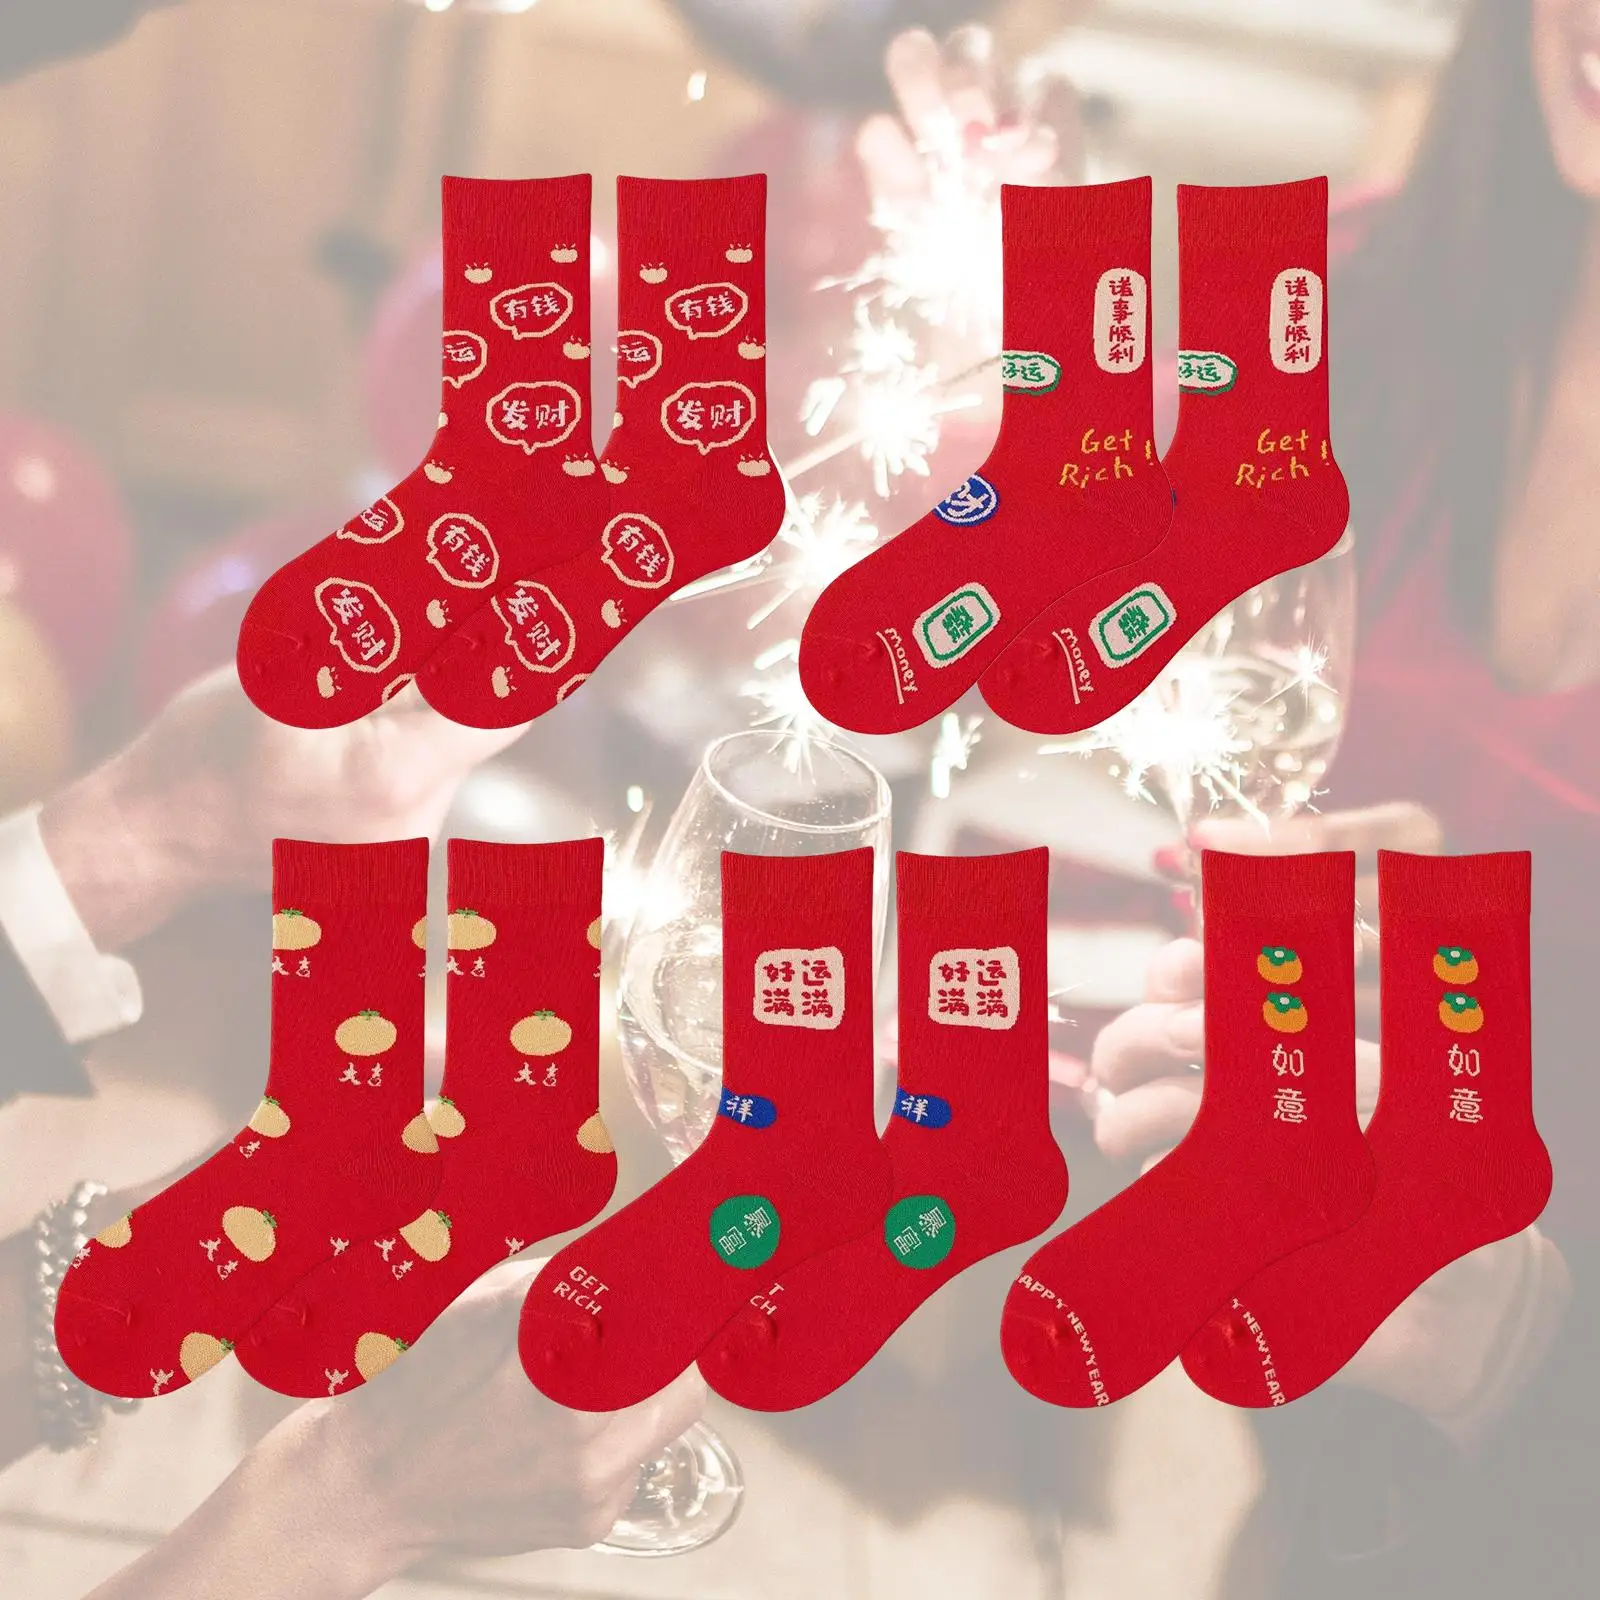 5 Pairs Red Socks, Winter Soft Breathable Stockings Ankle Socks Festival Socks for Girls